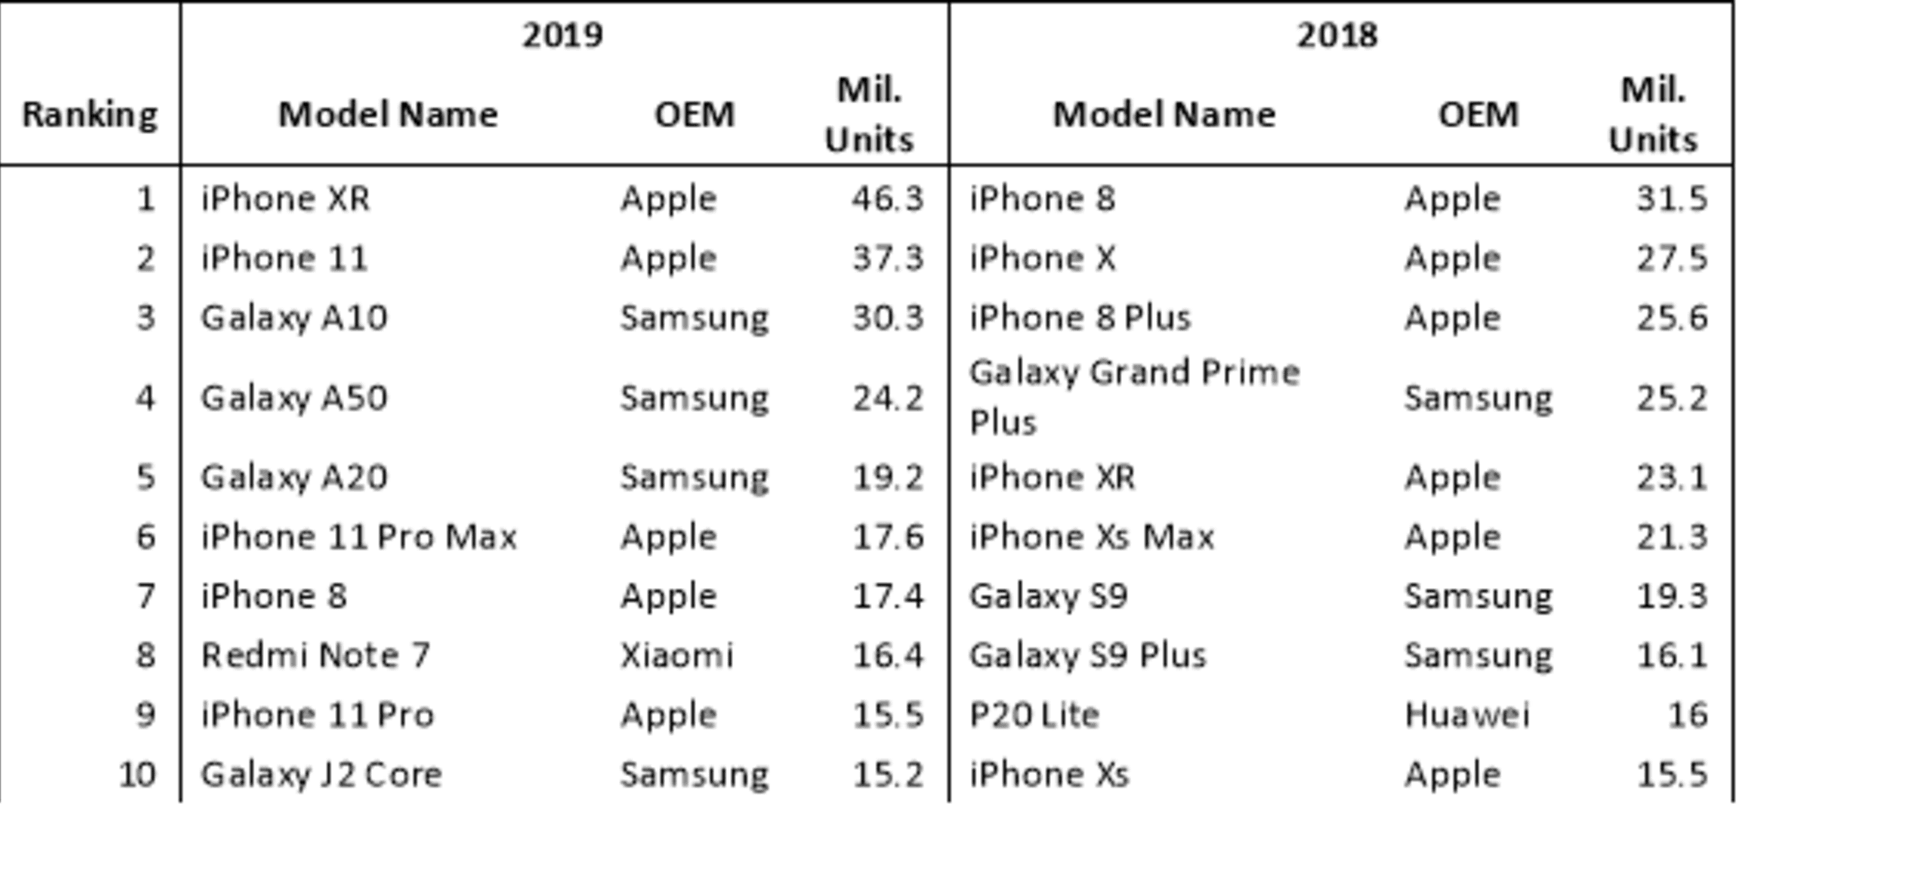 Žebříček prodejnosti jednotlivých telefonů za rok 2019